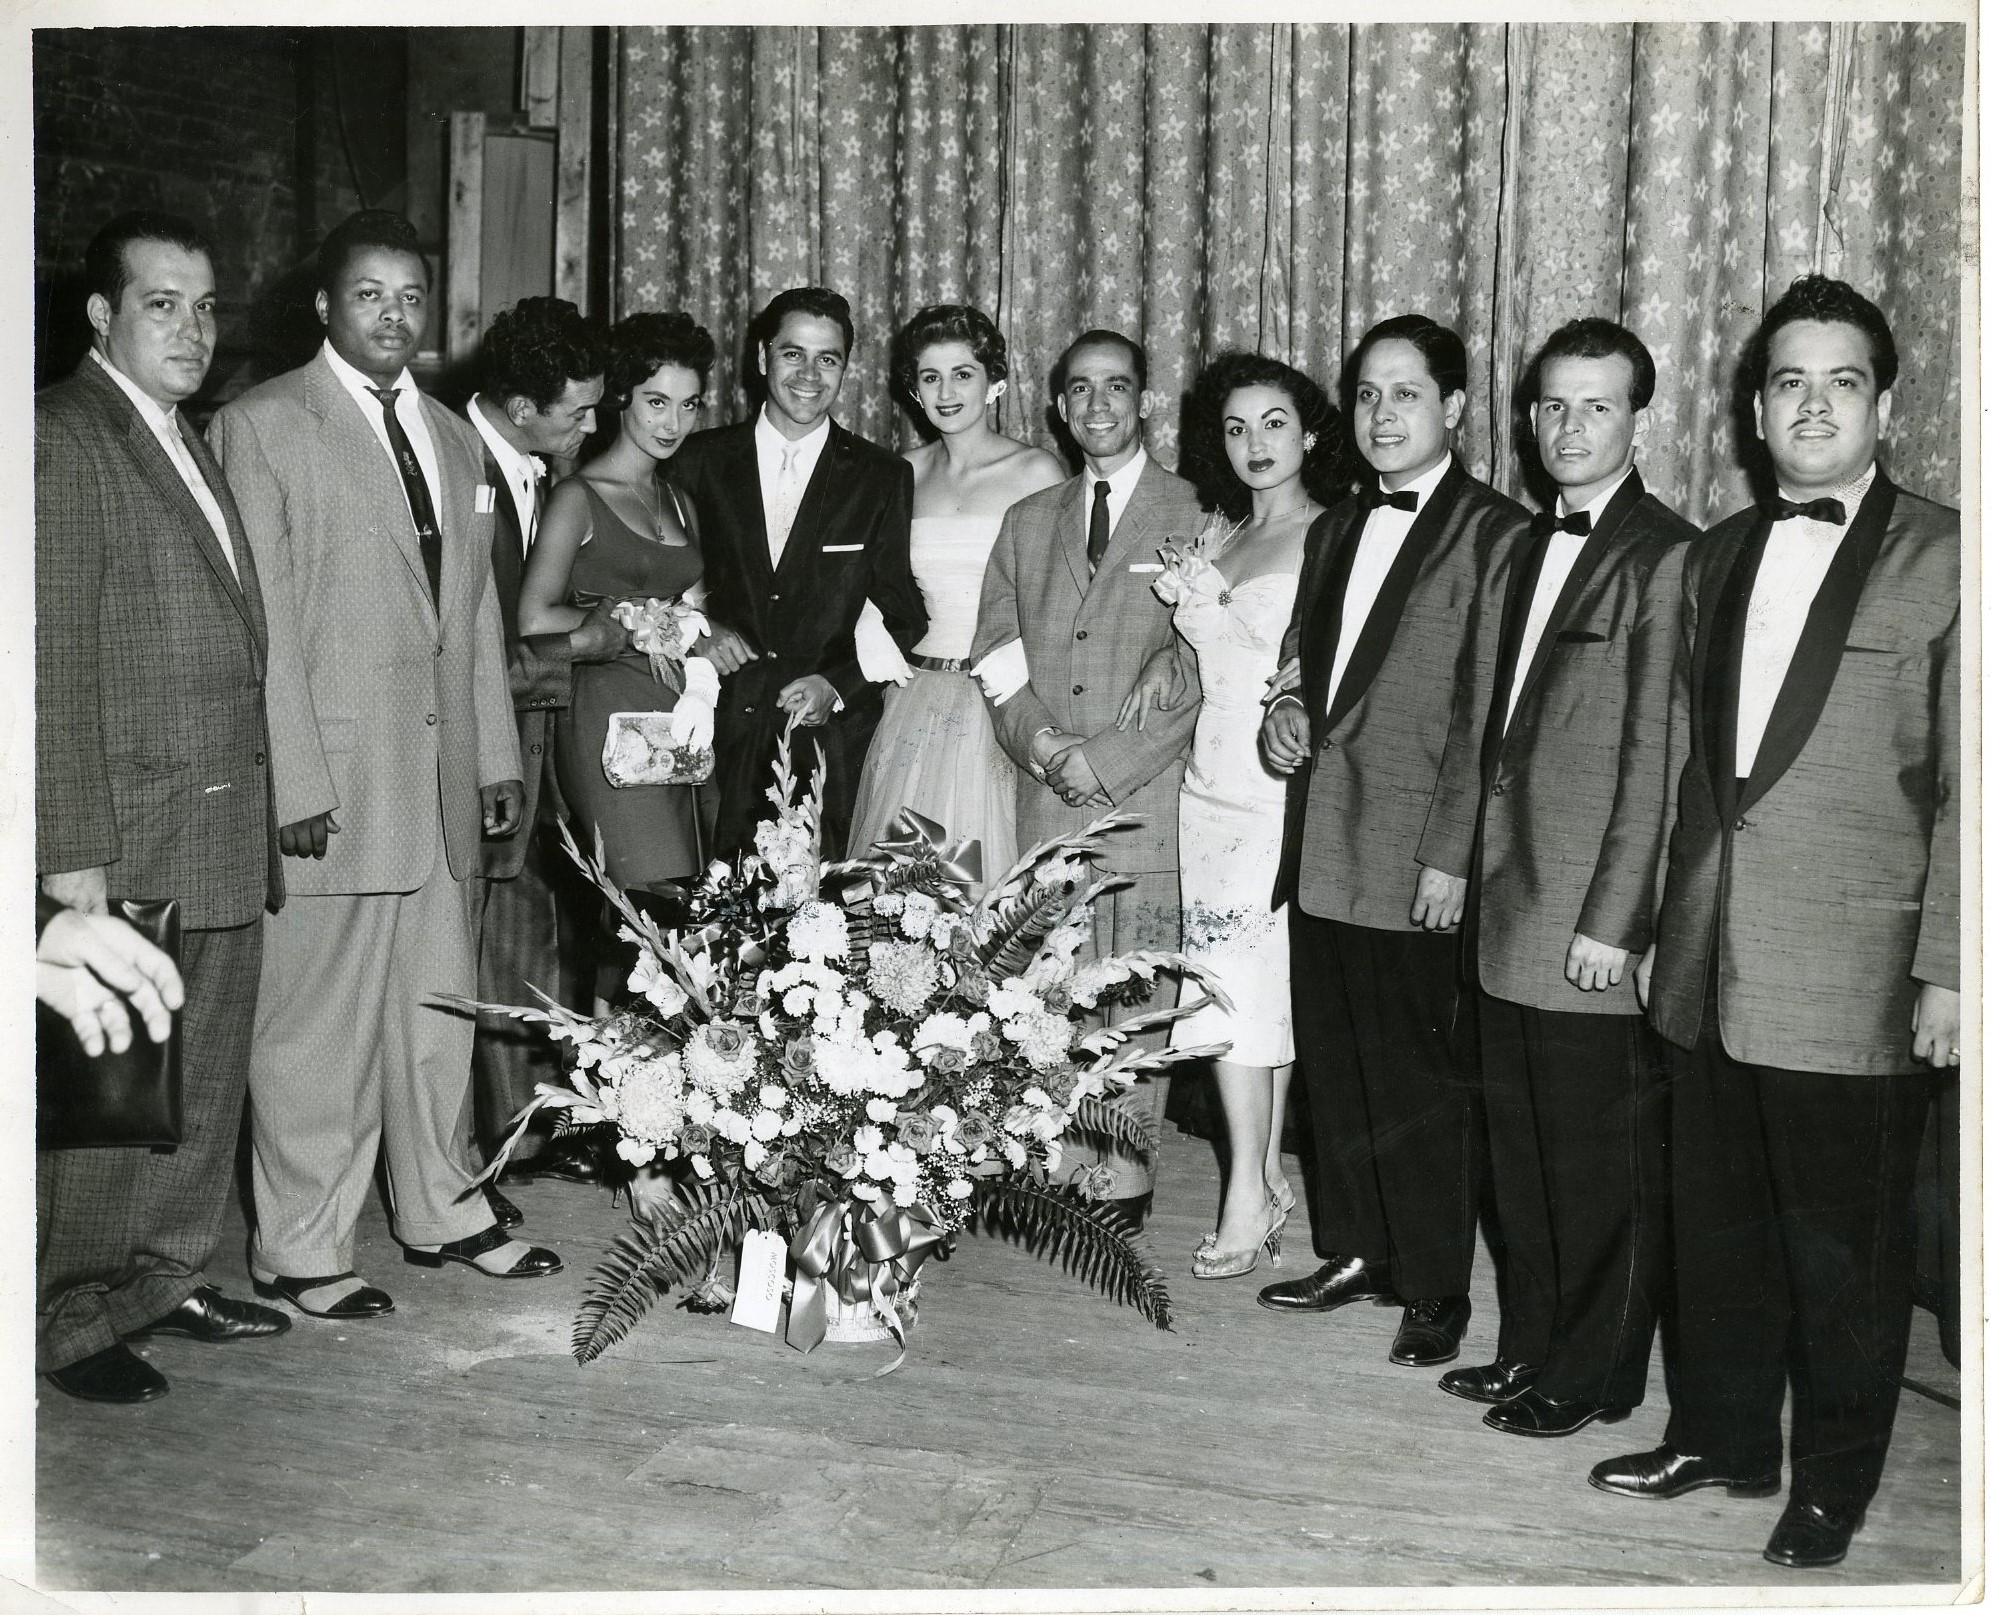 Tribute to Elenita Santos at Teatro Puerto Rico, Bronx, N.Y. organized by Ateneo Dominicano featuring Lucho Gatica, Mario De Jesús, Trio Ecuatoriano, and Al Santiago, among others, October 18 1957.